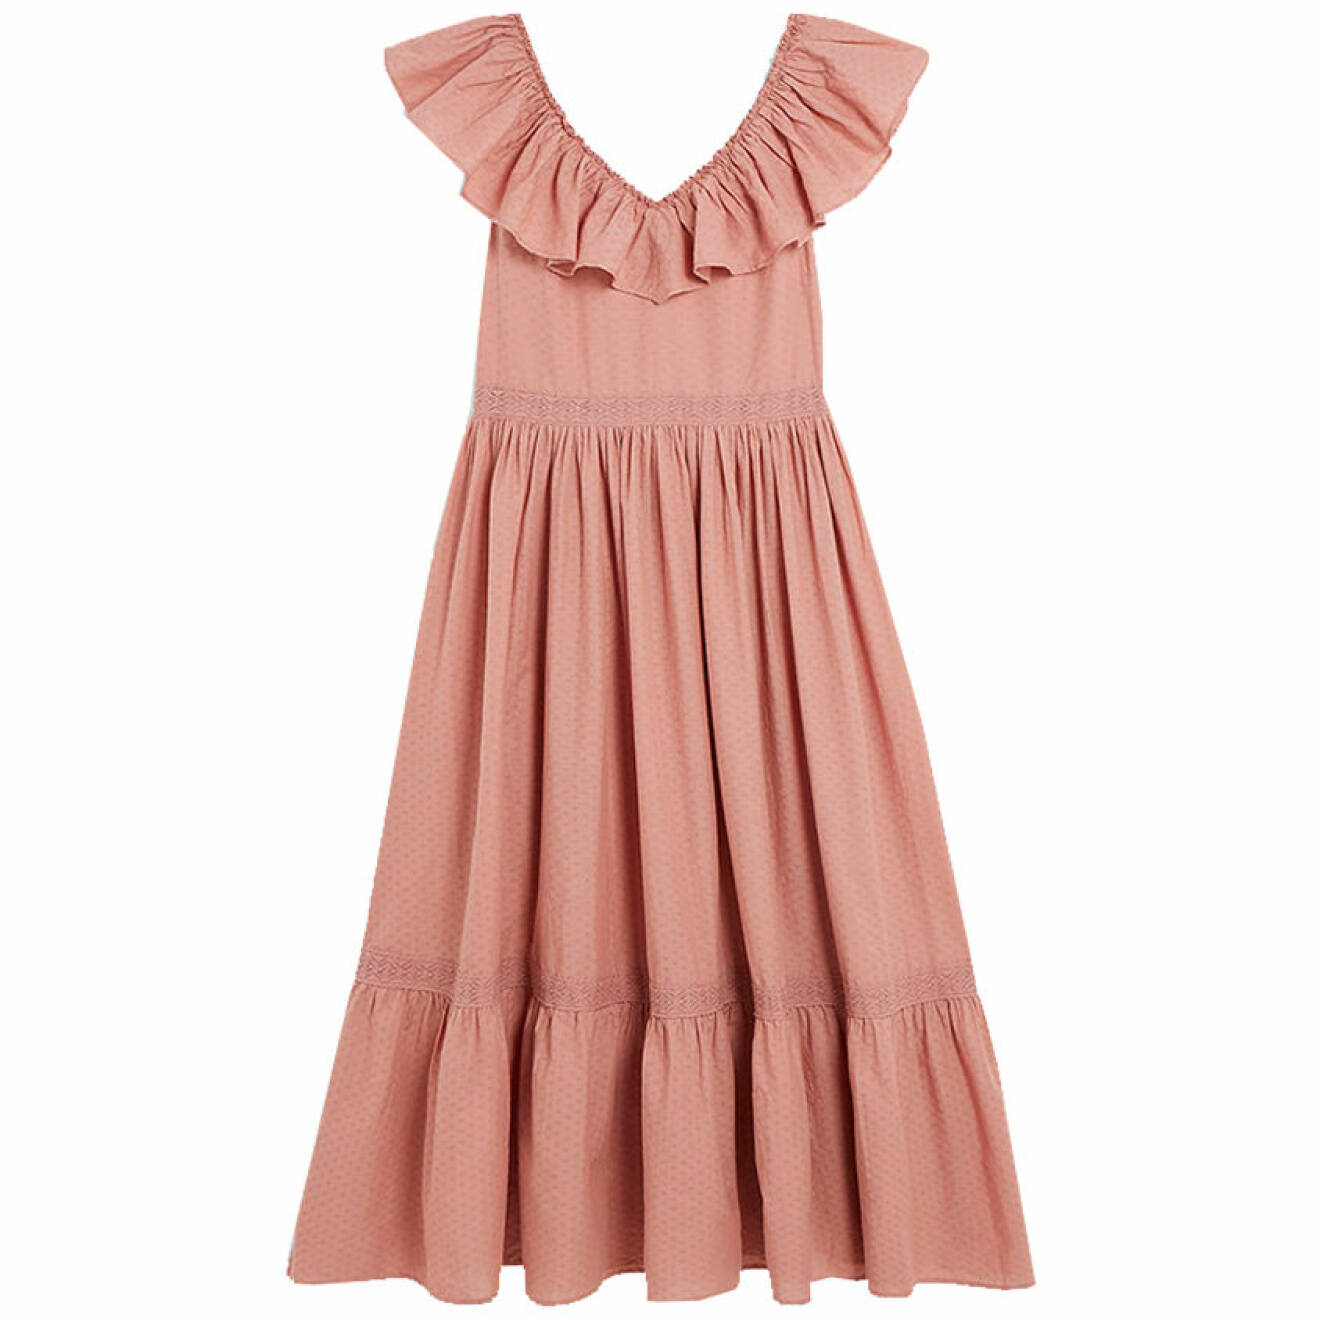 matchande rosa klänningar till mamma och barn sommaren 2021